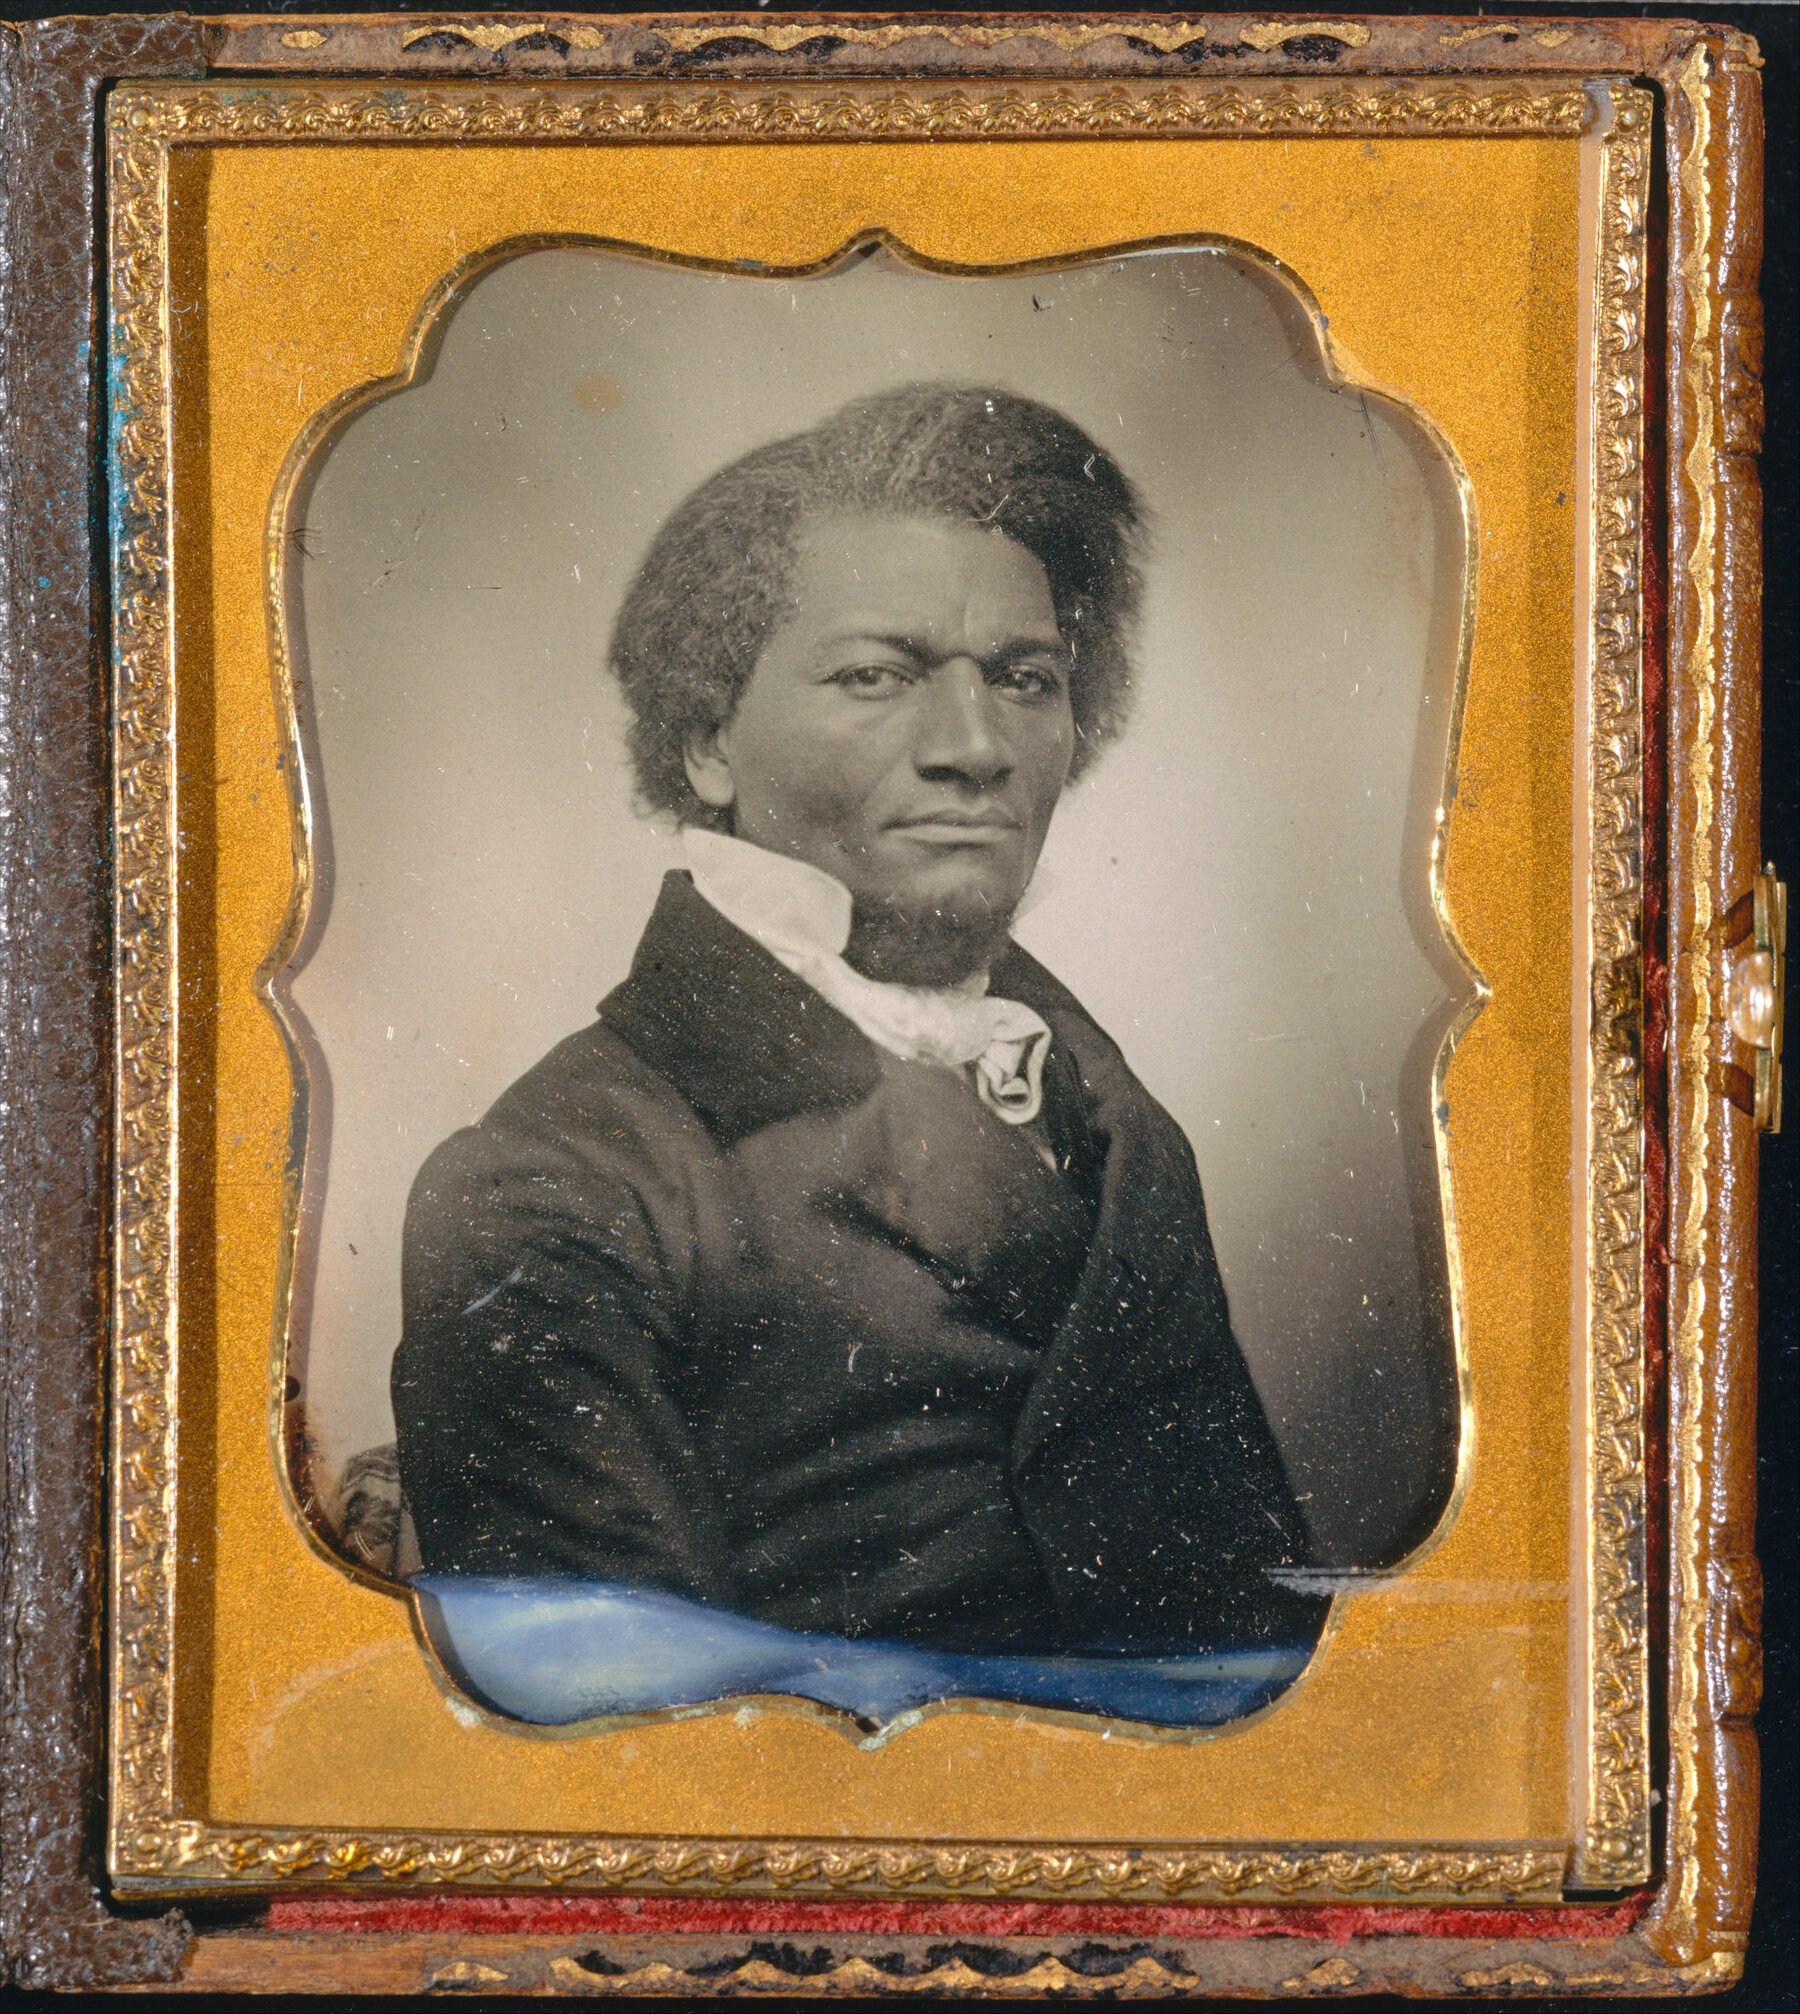 Frederick Douglass posant pour un portrait assis, en tenue du milieu du XIXe siècle.  Le portrait est en noir et blanc et encadré dans un cadre doré.